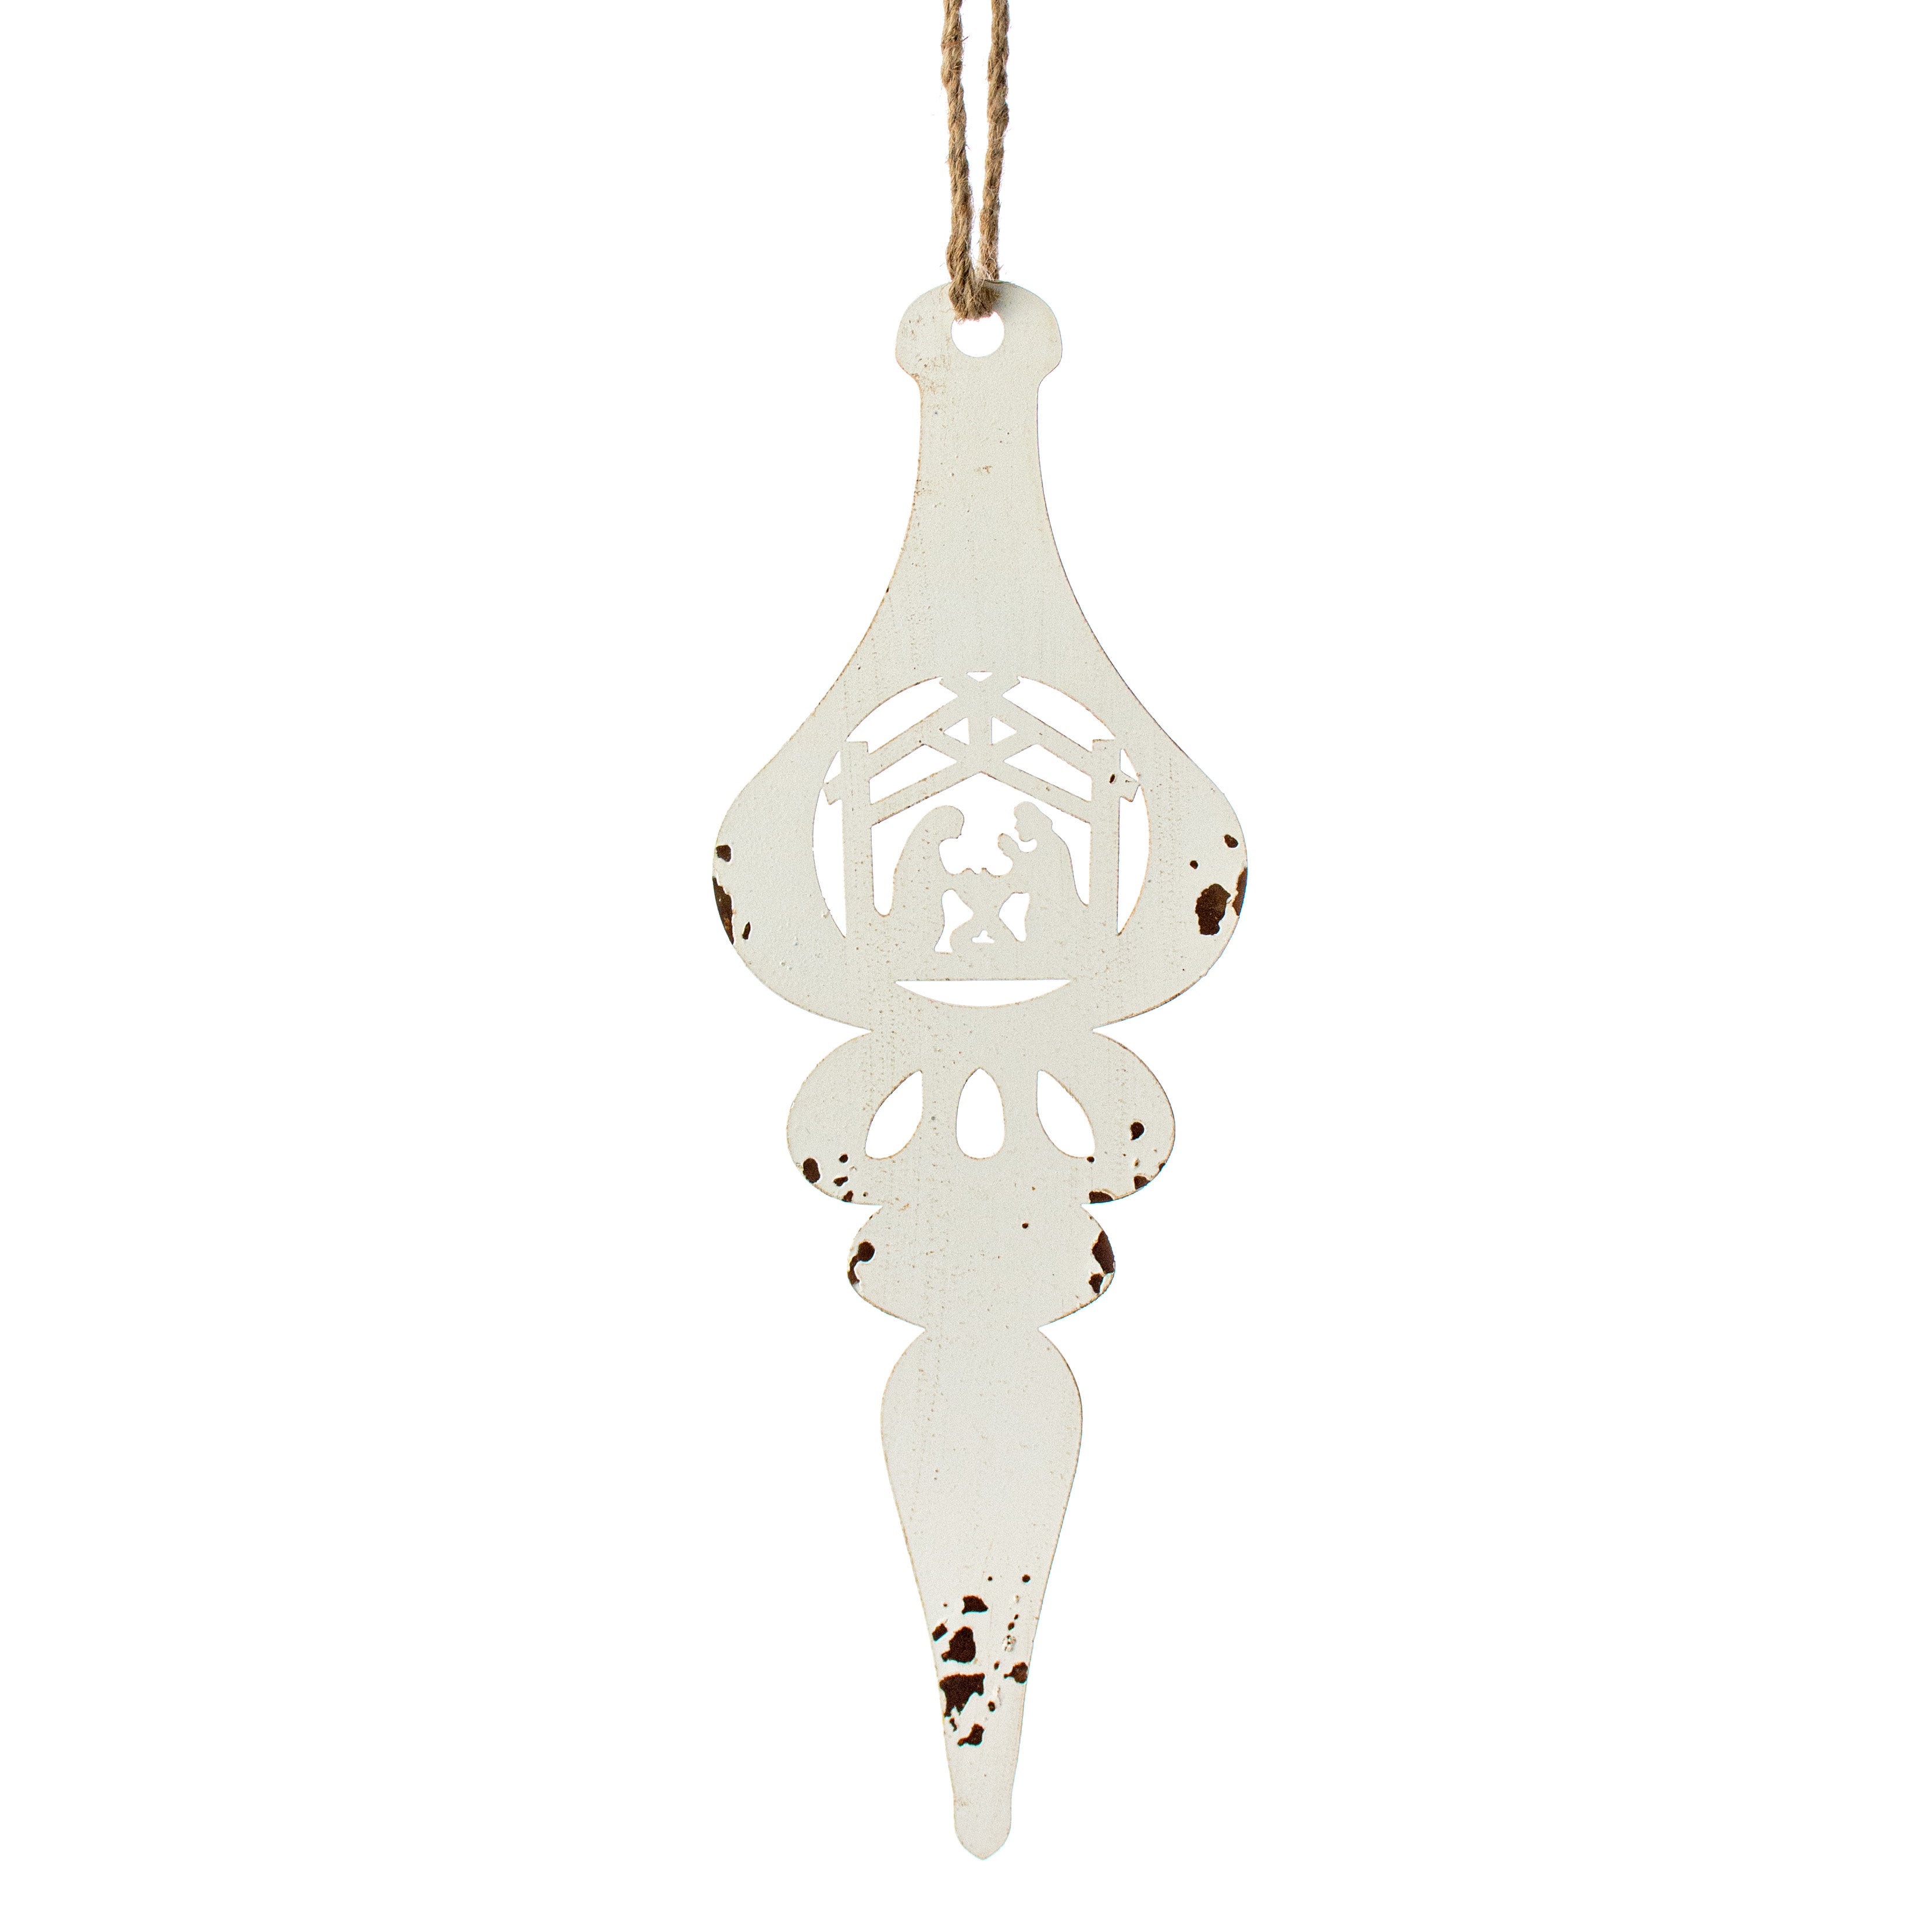 15" Vintage Metal Lantern Ornament: White